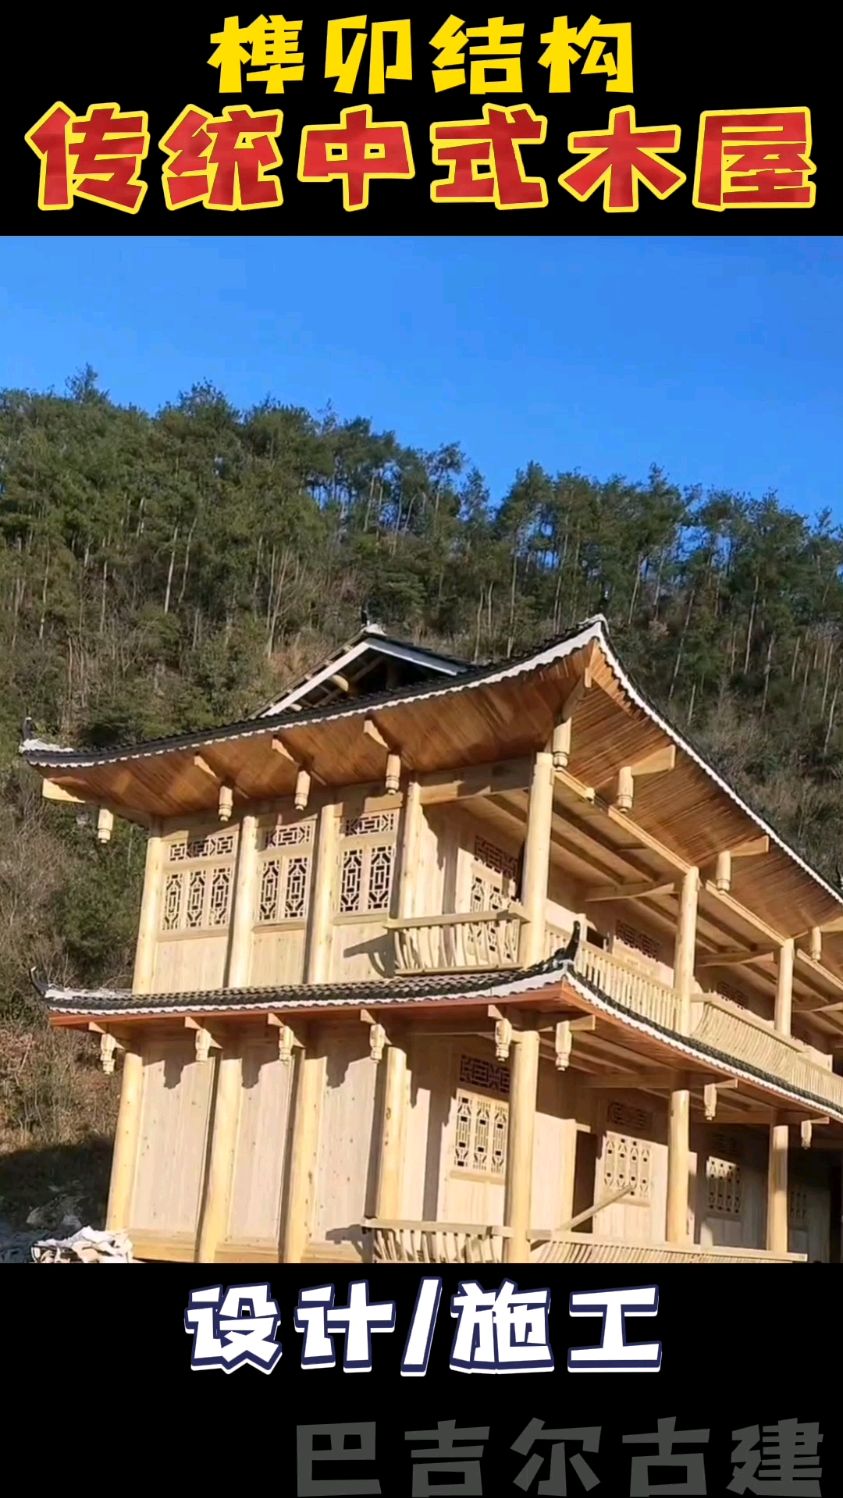 中式木屋传统榫卯结构木房子这样的农村别墅你觉得怎么样